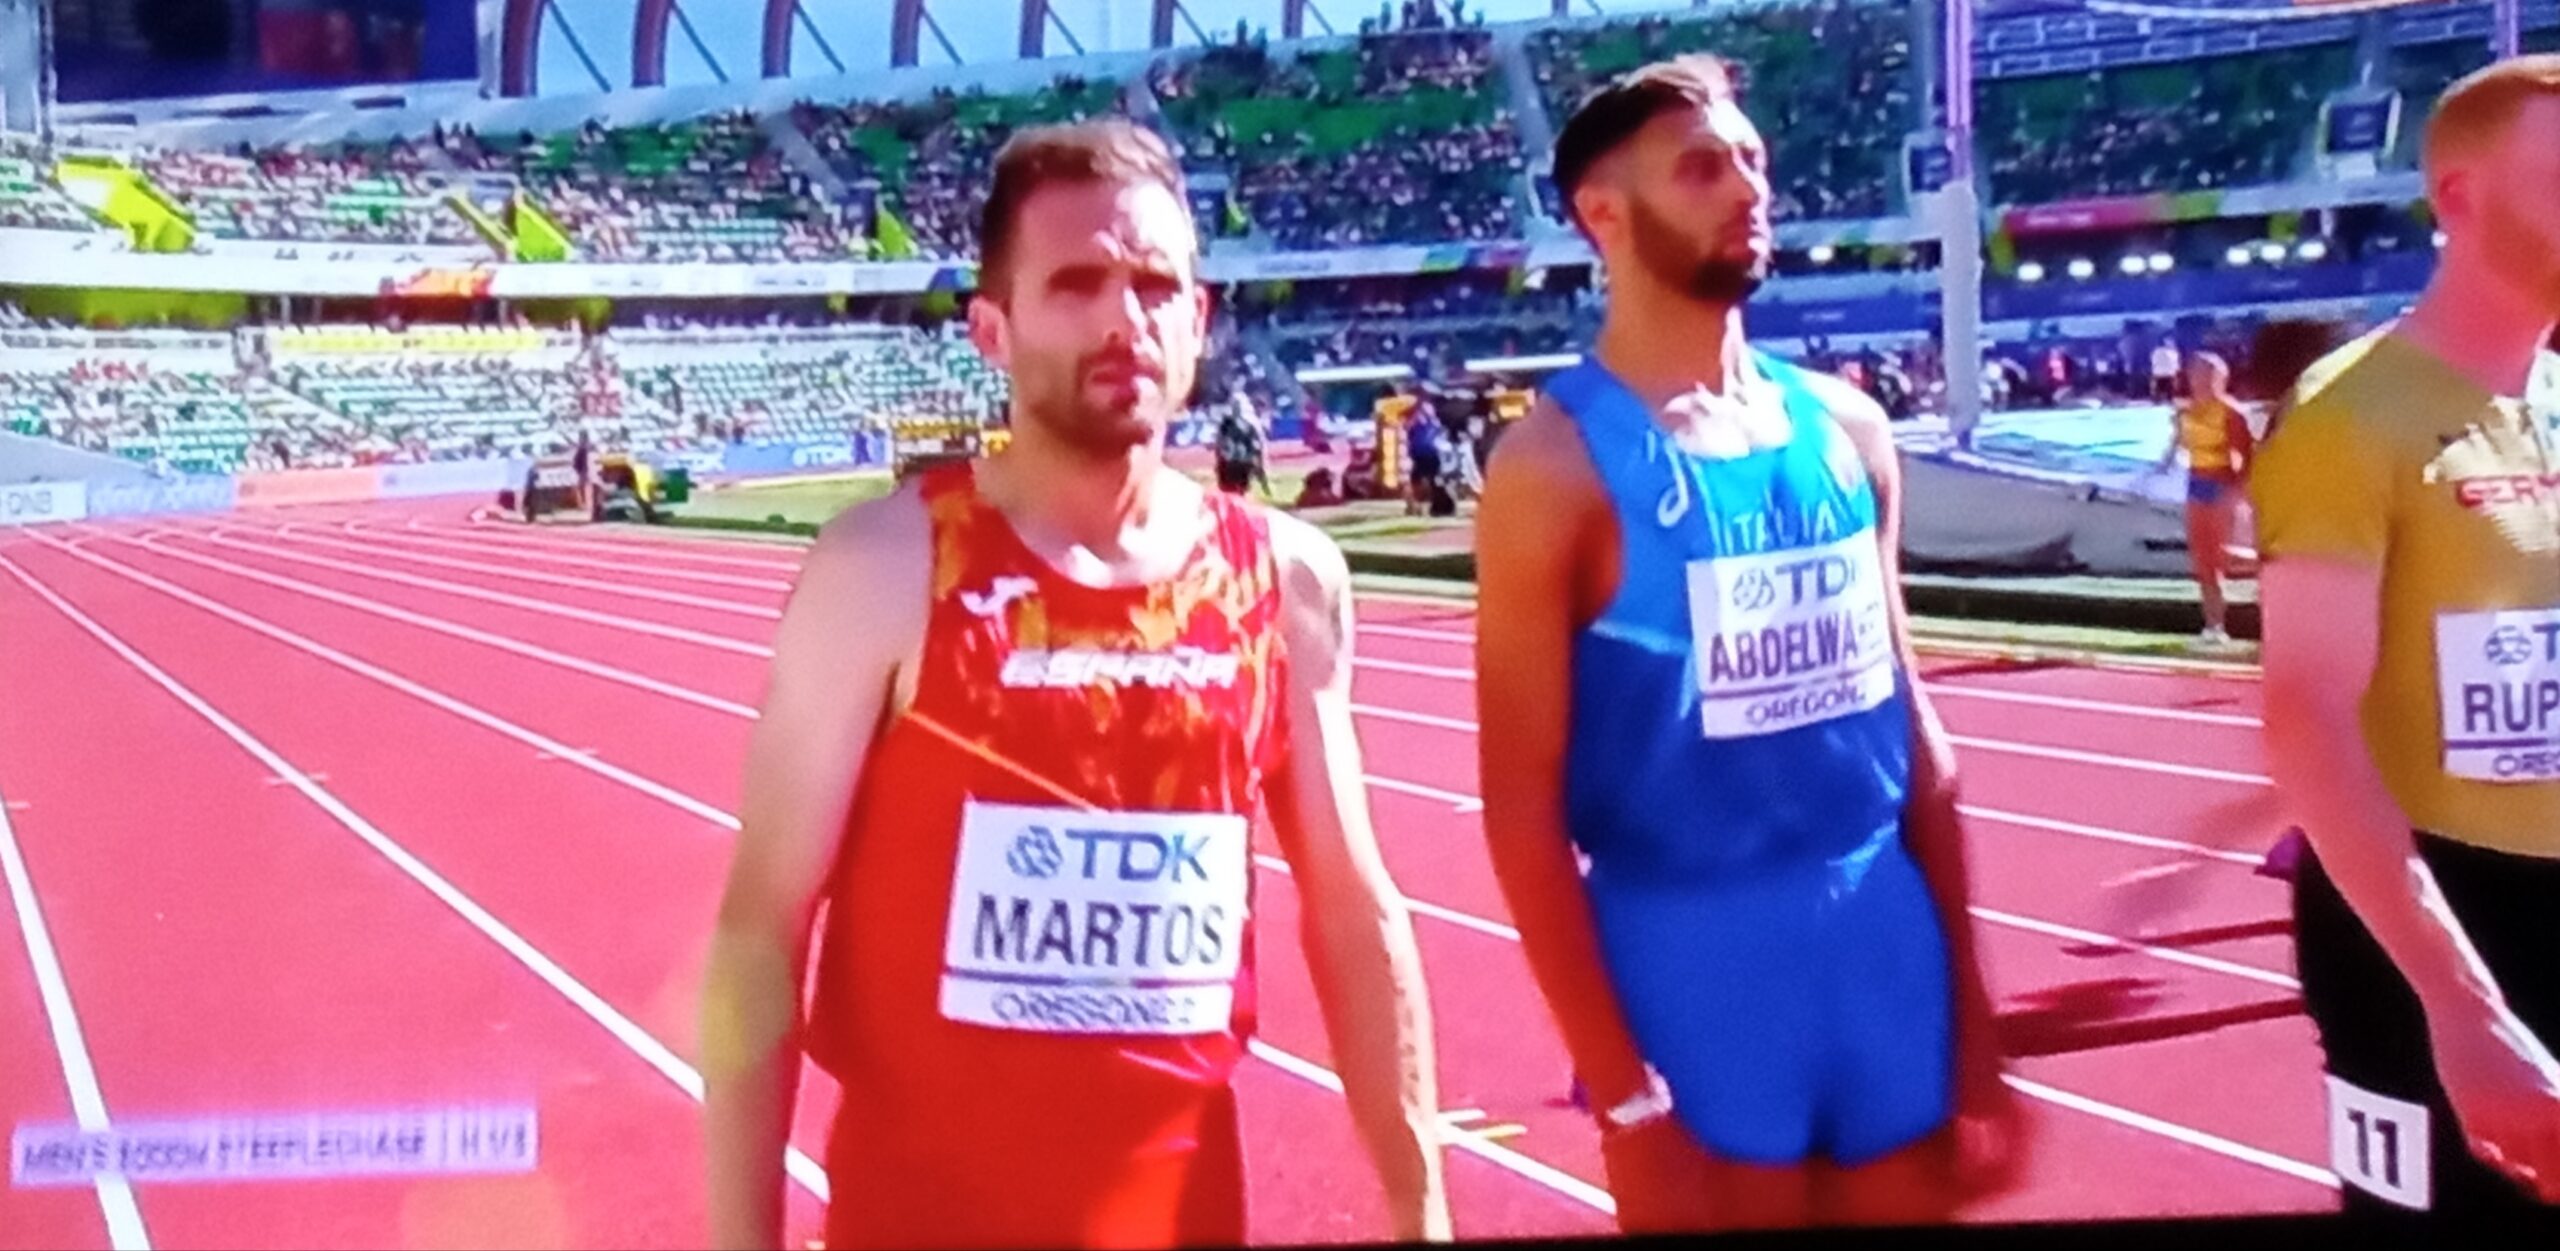 Sebas Martos no se mostraba contento tras la 14ª posición en la final del 3000 m obstáculos